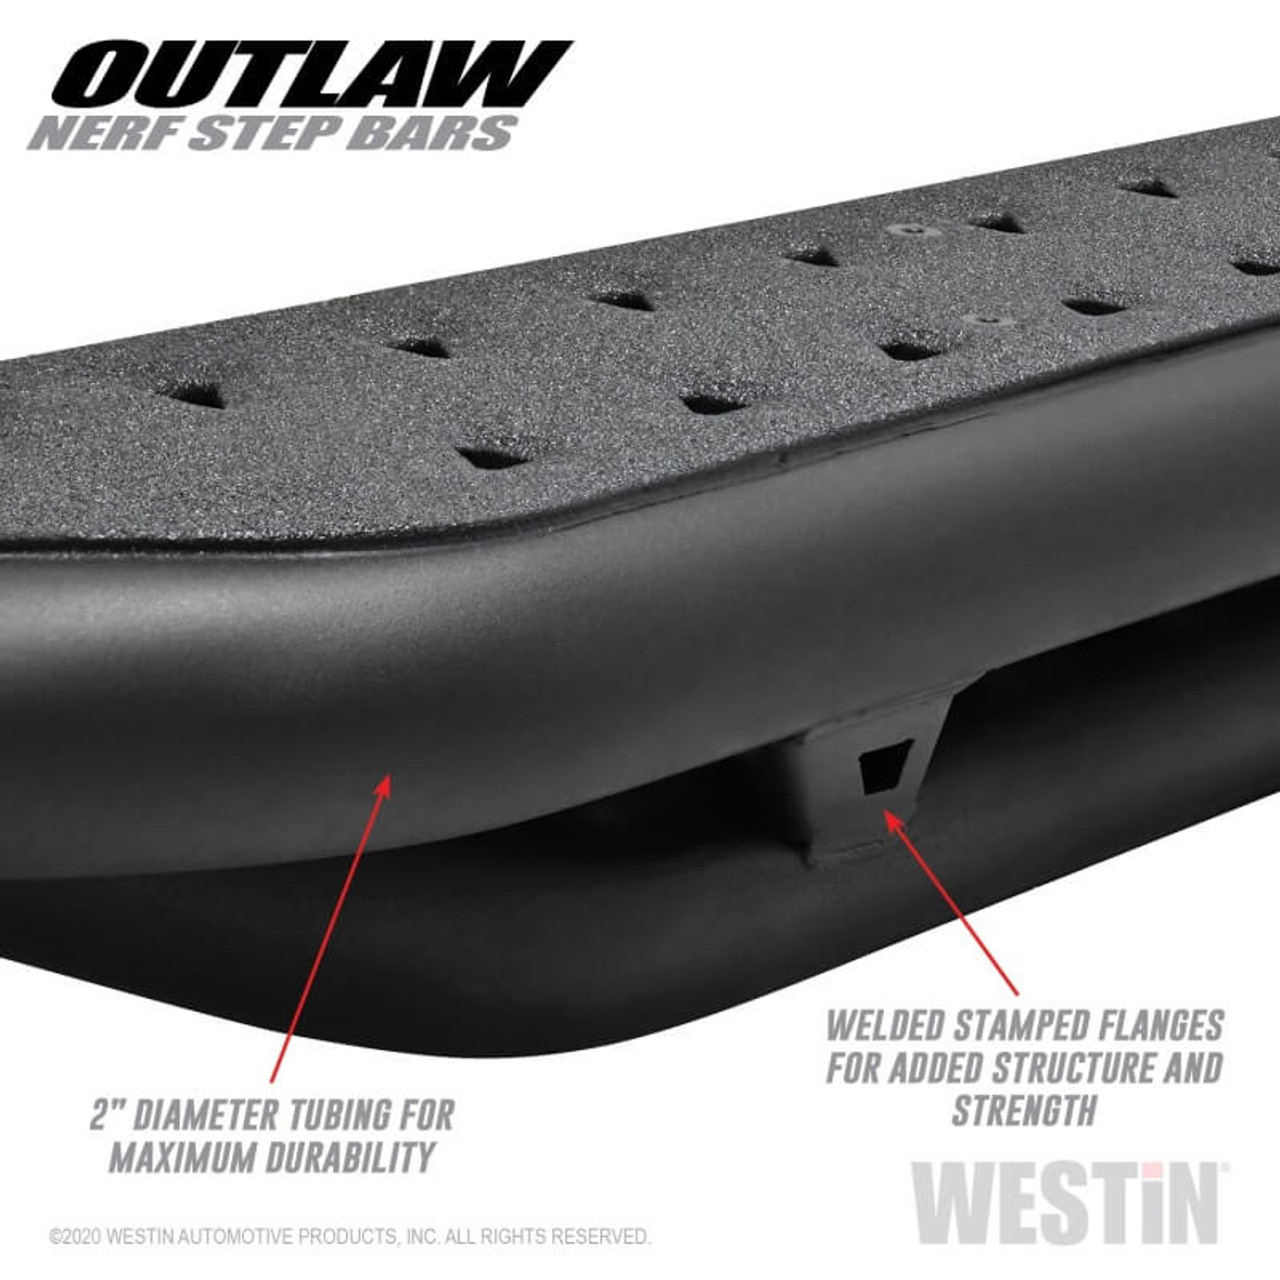 Westin Outlaw Nerf Step Bars For 2014+ Toyota 4Runner - 58-53835